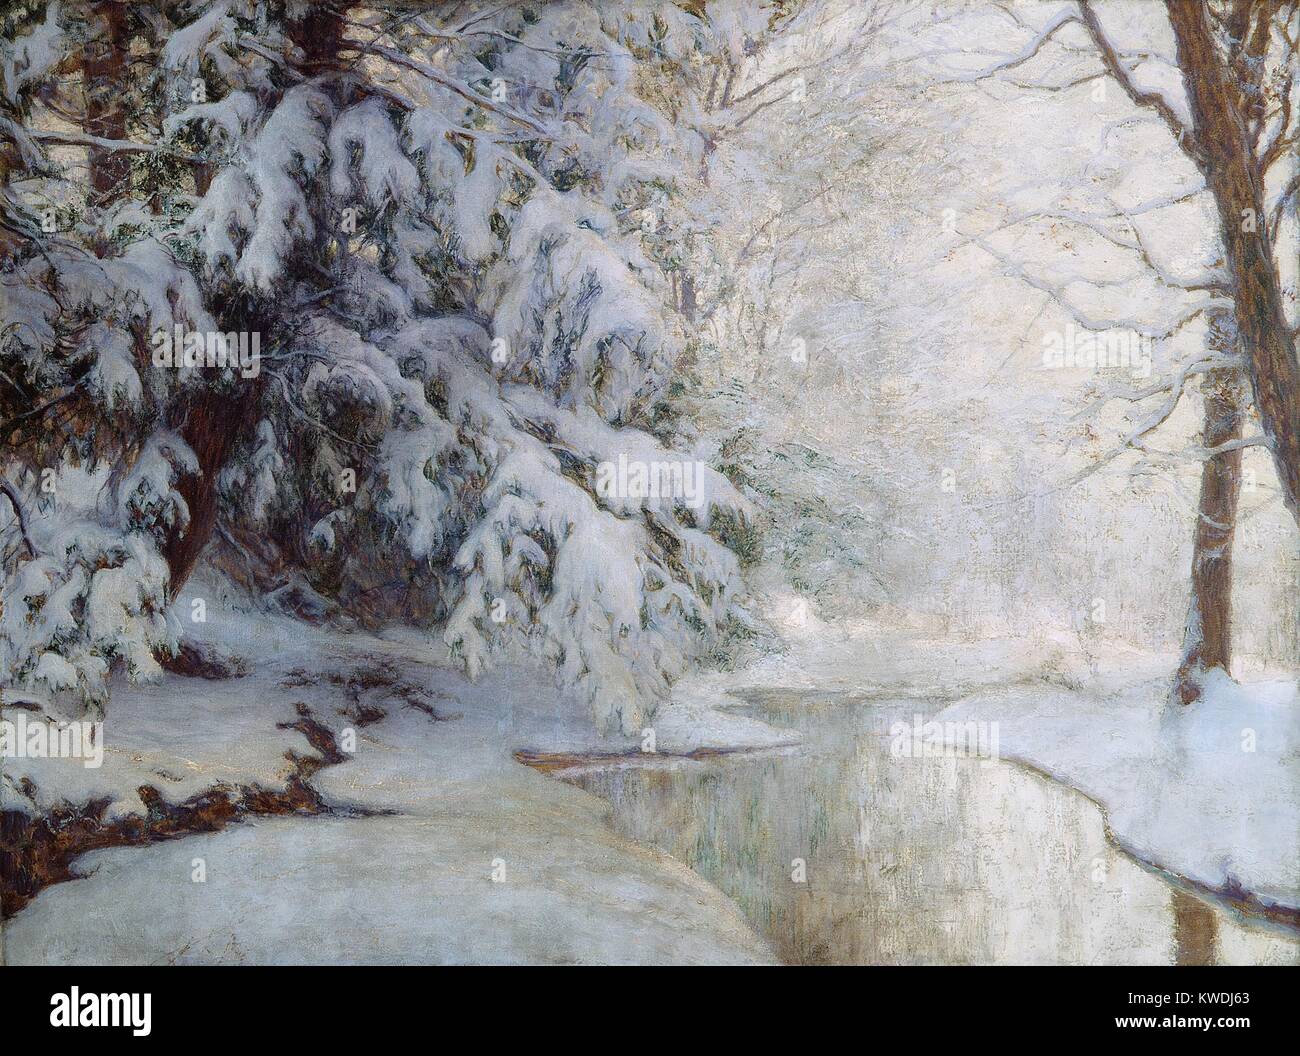 SILENT DAWN, par Walter Launt Palmer, c. 1919, American peinture, huile sur toile. Neige fraîche pèse sur les branches d'arbres à côté d'un cours d'eau partiellement gelés. Palmer est un peintre impressionniste naturaliste qui ont maintenu la clarté de la forme et l'espace (BSLOC 2017 9 15) Banque D'Images